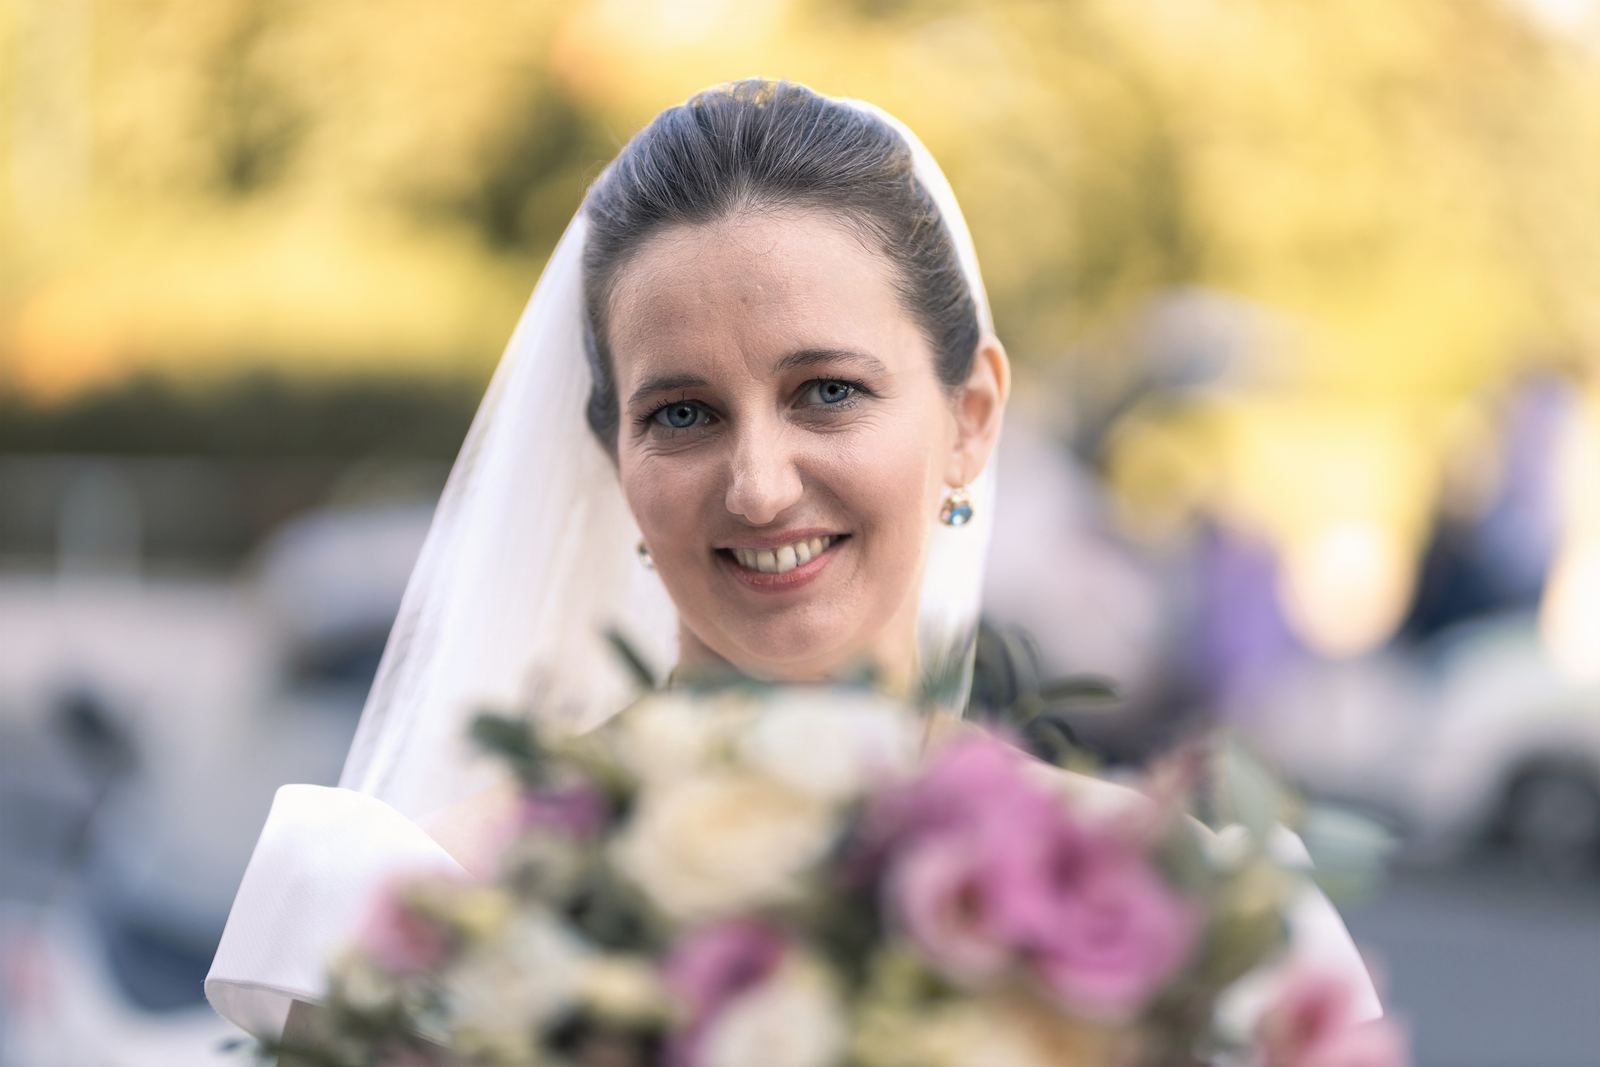 Svatební fotky Praha - nevěsta se svatební kyticí před kostelem